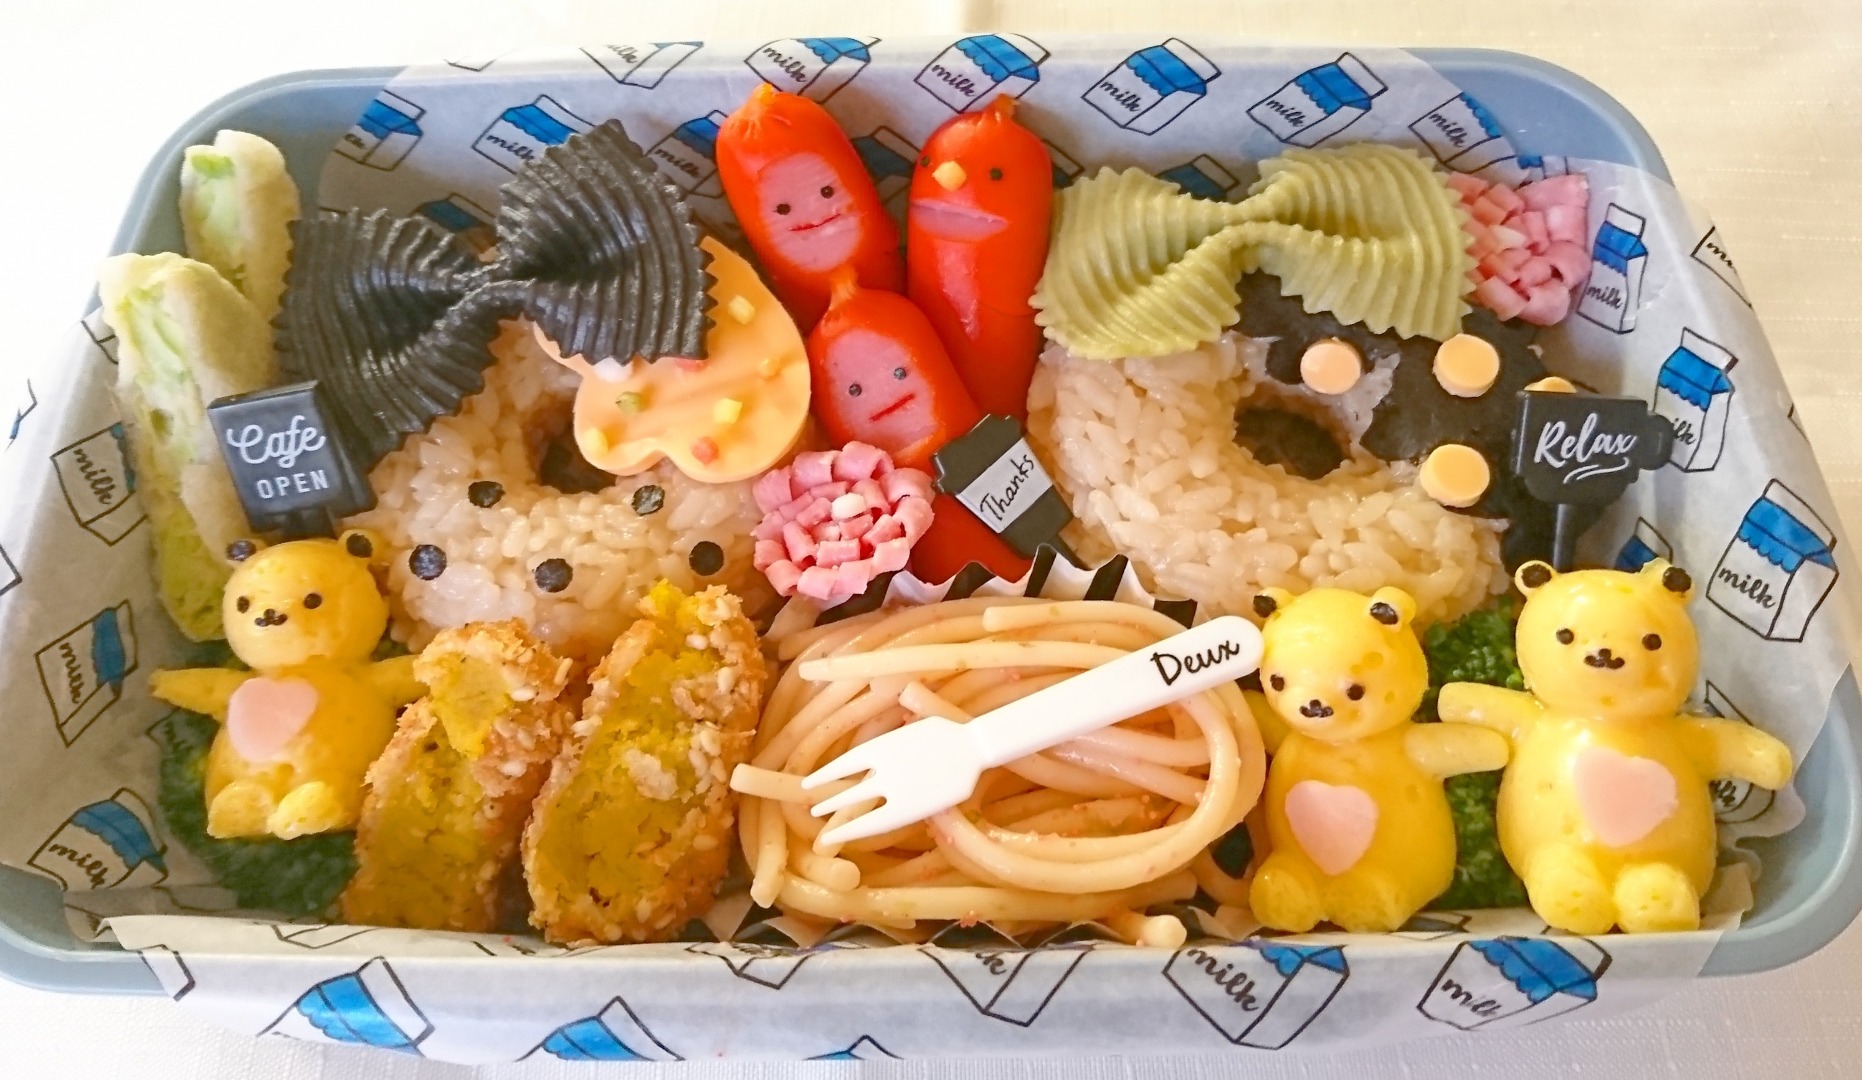 yumimamaが投稿したフォト「冷凍食品おかず(たらこパスタ かぼちゃコロッケ 枝豆ナゲット…」 - 2020-03-18 15:18:32 |  LIMIA (リミア)